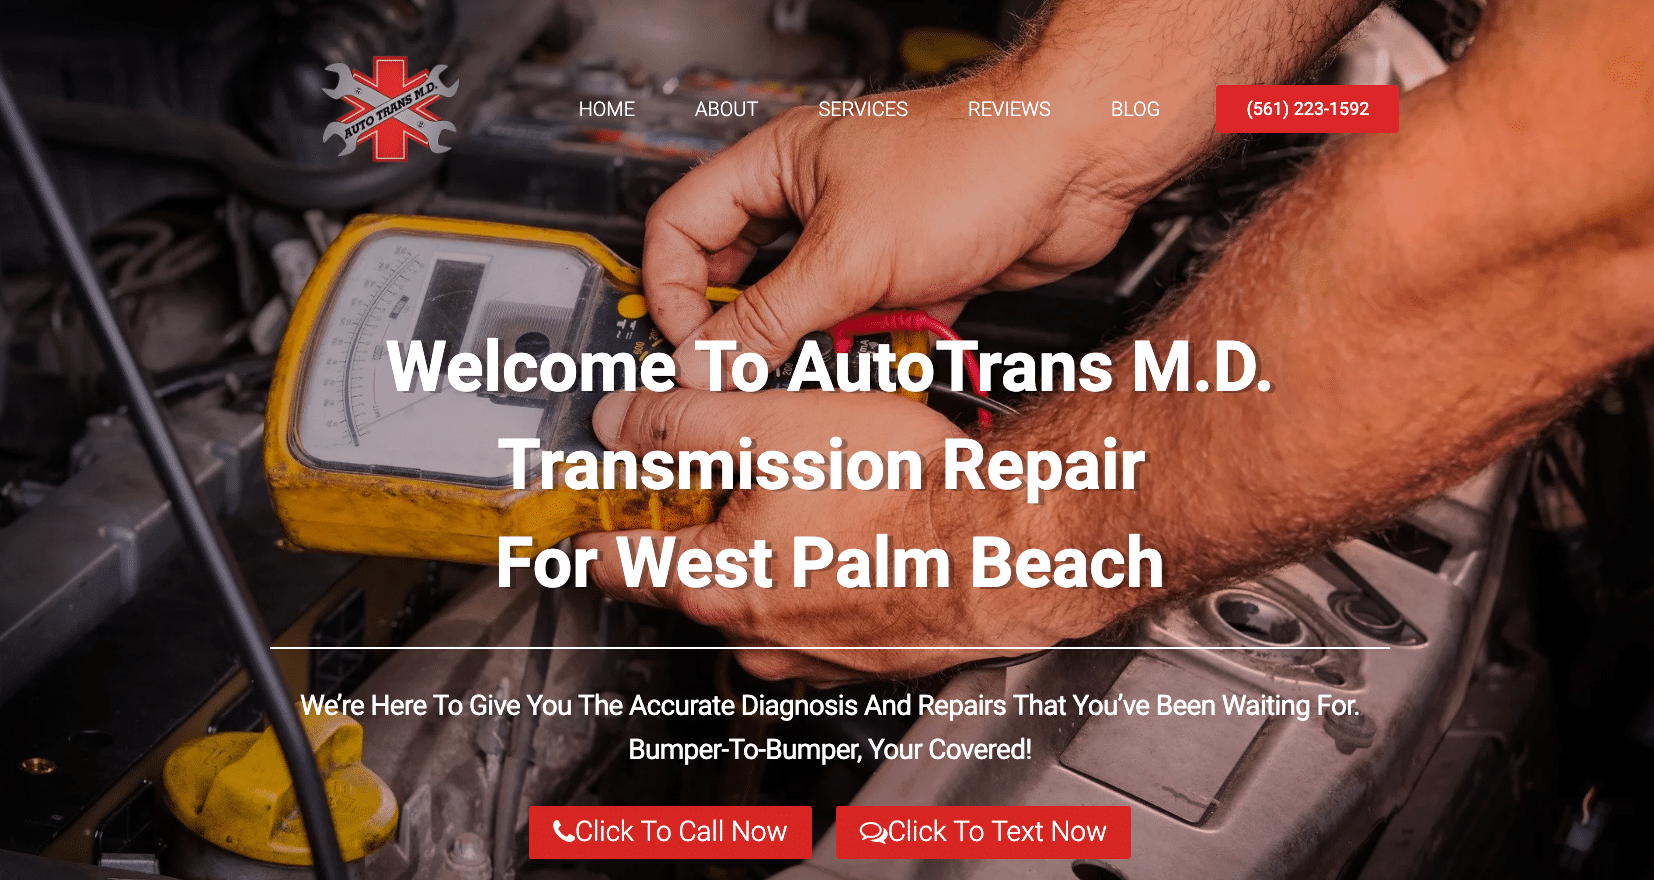 AutoTrans M.D. Website